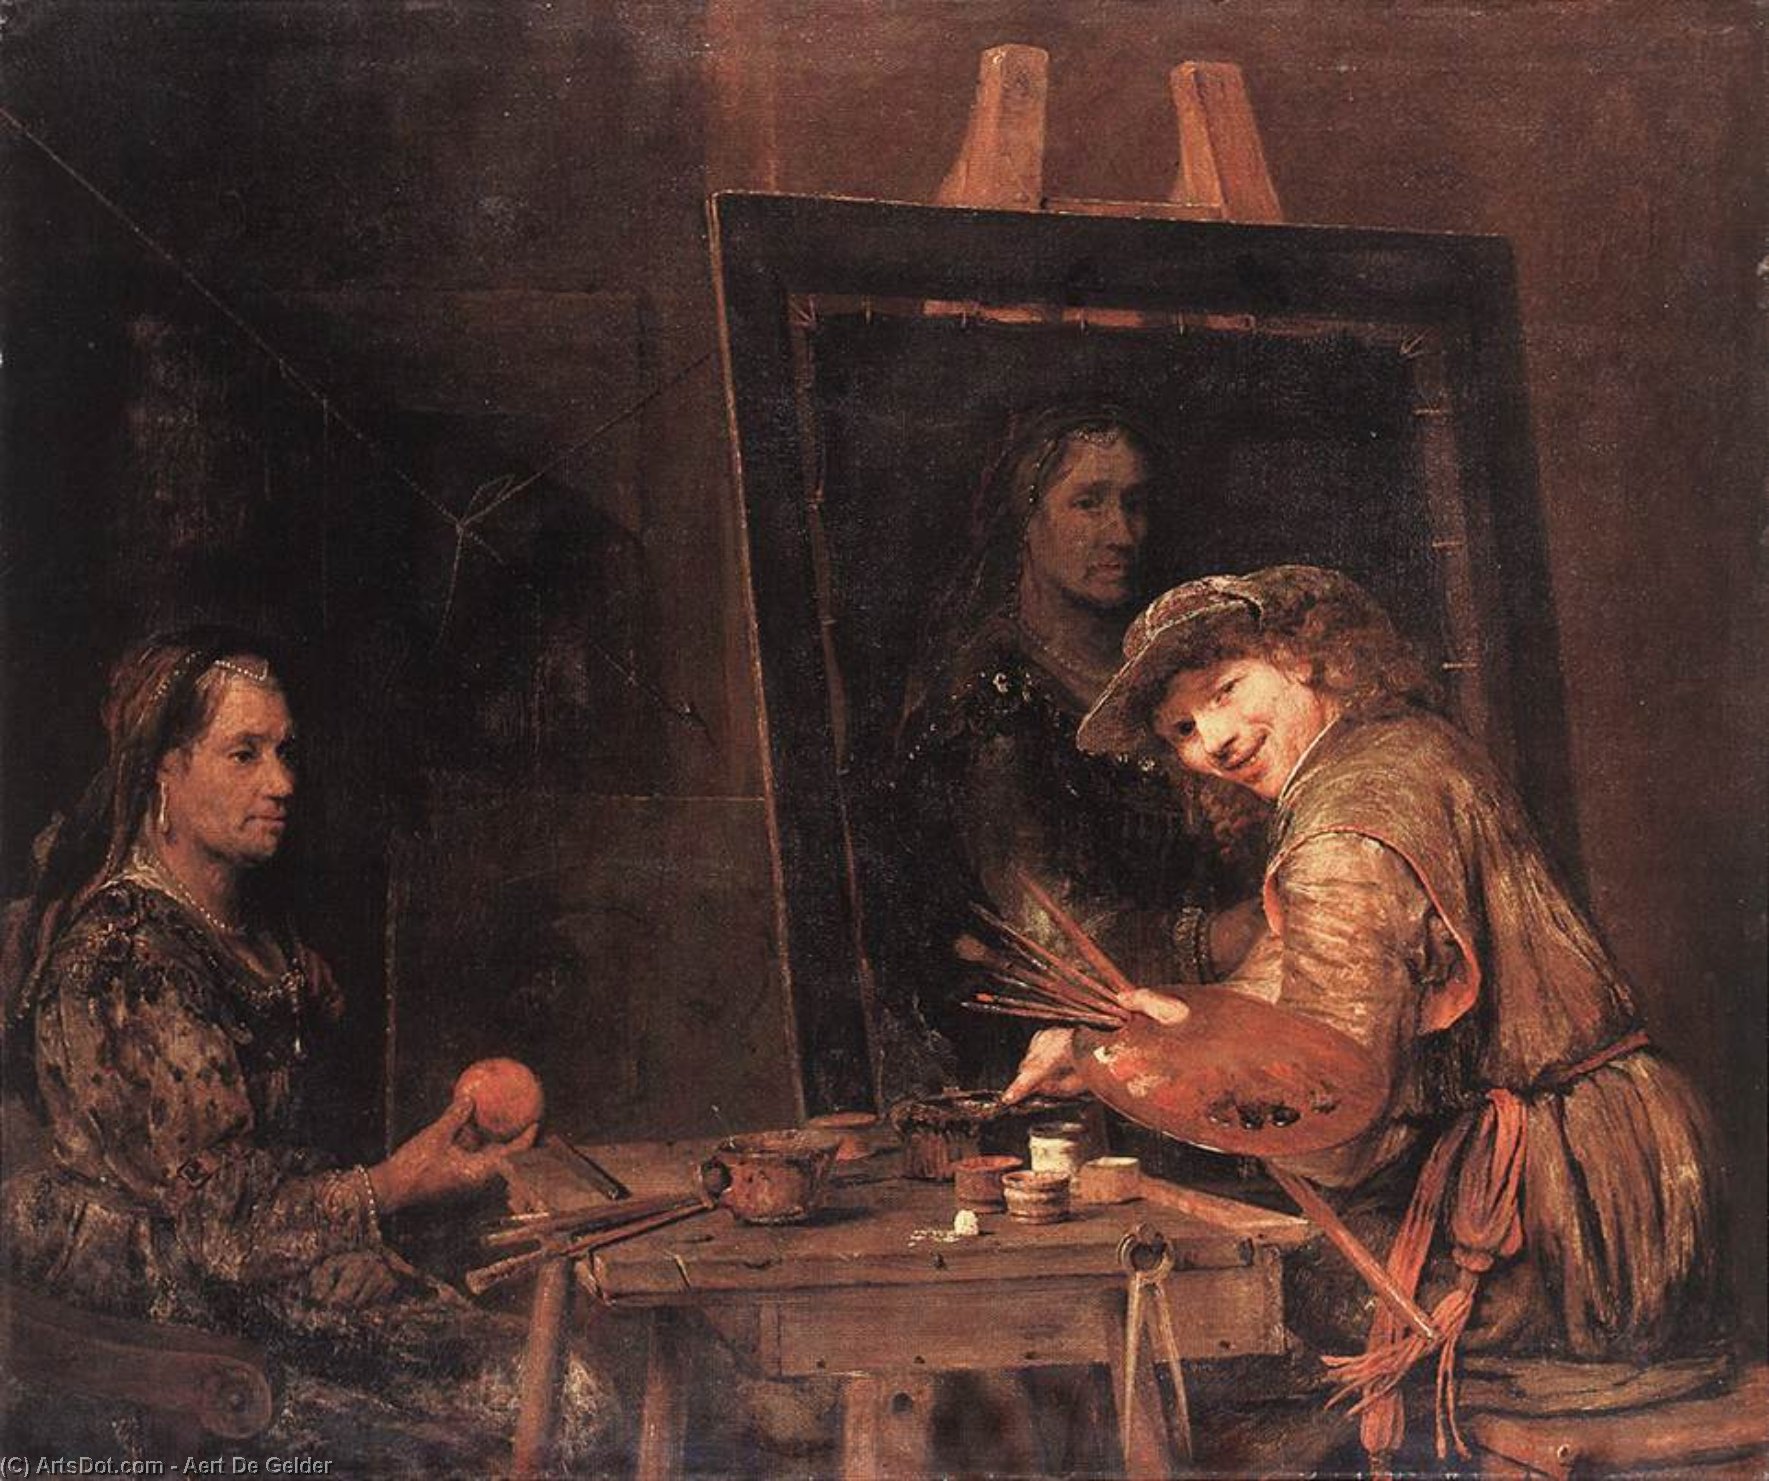 WikiOO.org - 백과 사전 - 회화, 삽화 Aert De Gelder - Self-Portrait at an Easel Painting an Old Woman